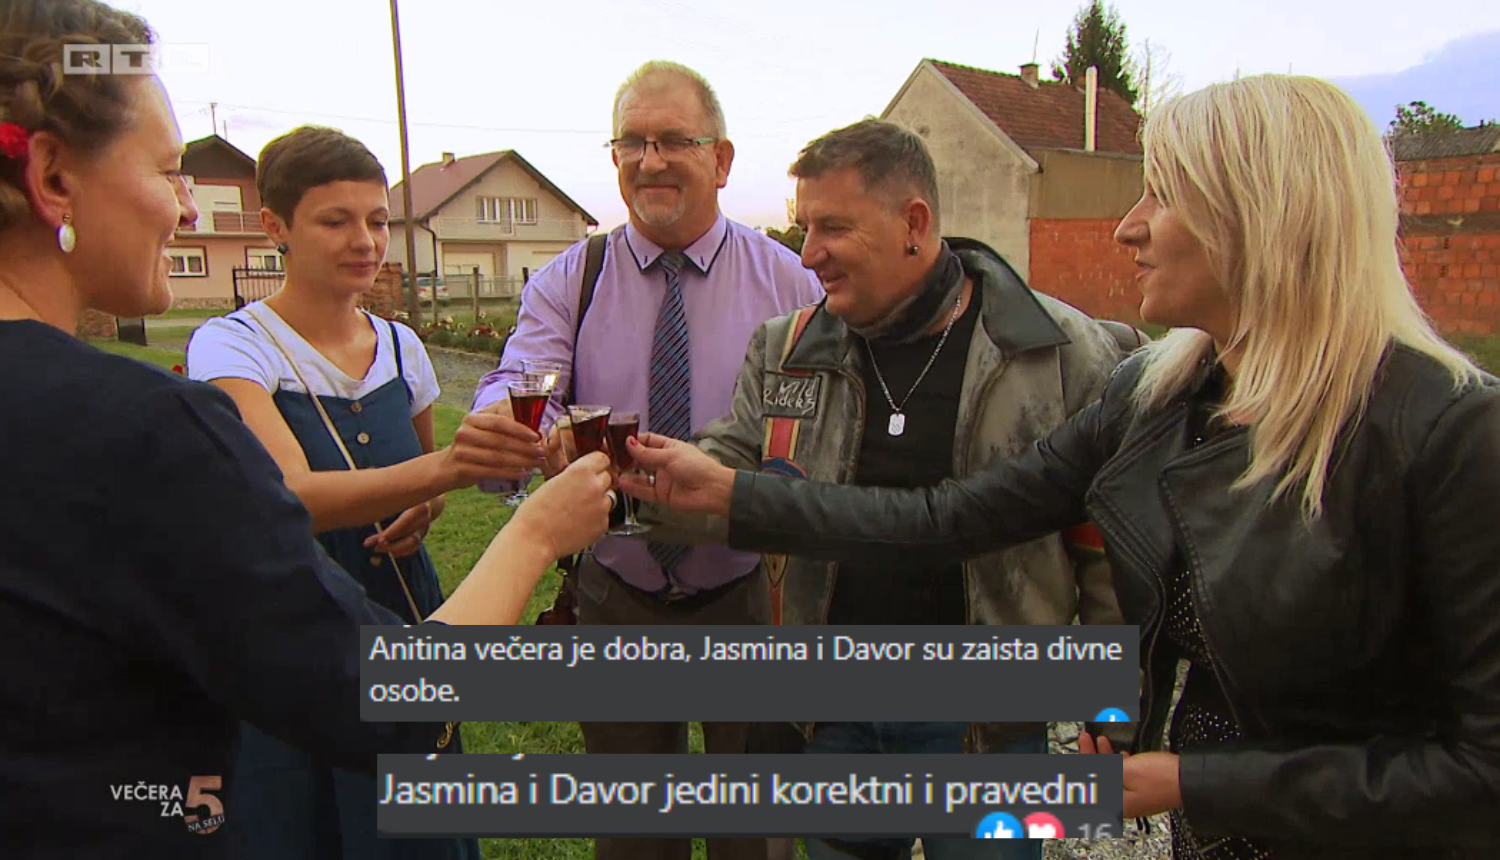 Goran je pobijedilo, ali favoriti gledatelja su Davor i Jasmina: 'Jedini su korektni i pravedni'